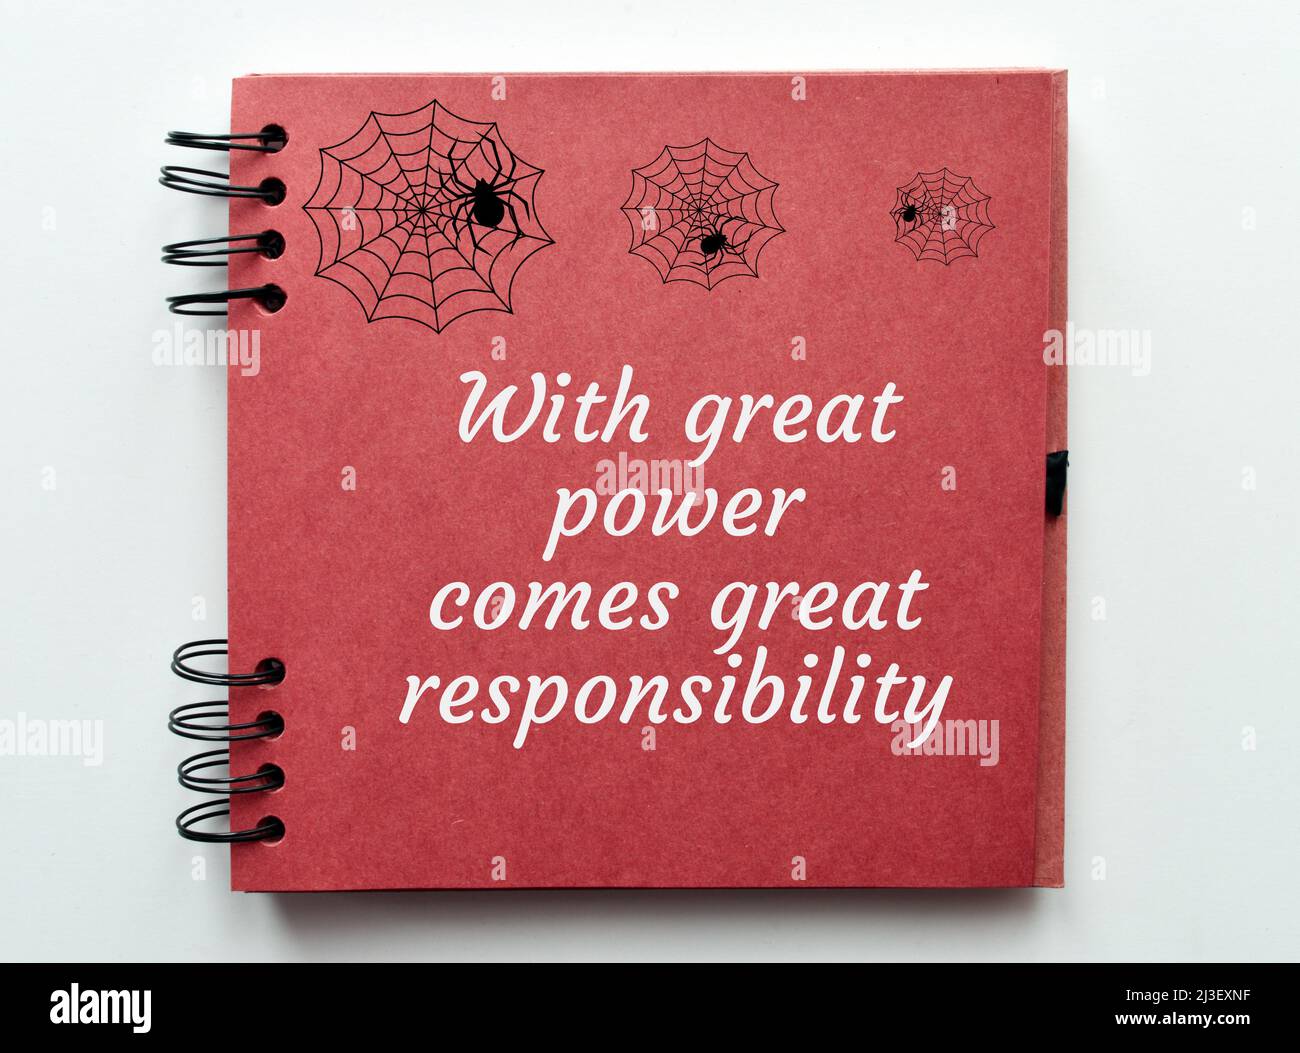 Con grande potere viene grande responsabilità. Citazione motivazionale e di ispirazione. Foto Stock